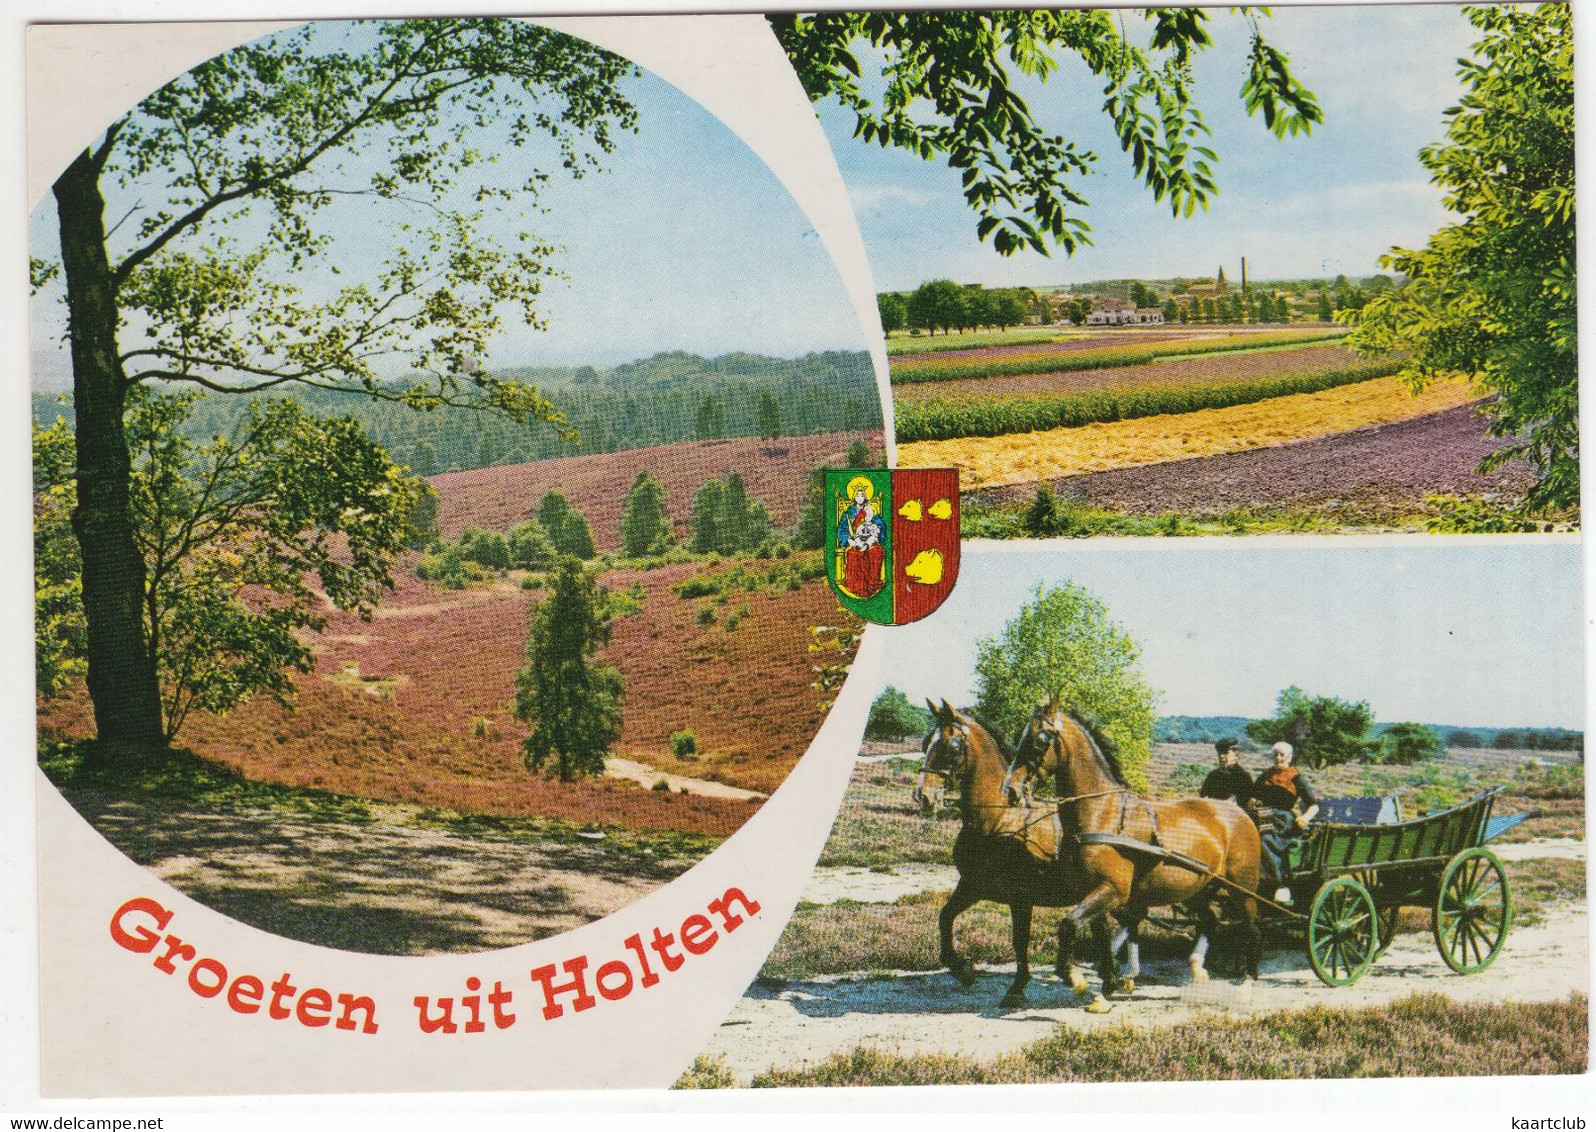 Groeten Uit Holten (OV.)  - (Nederland / Holland) - Nr. HON 2 - Heide, Paarden, Boerenwagen, Klederdracht - Holten